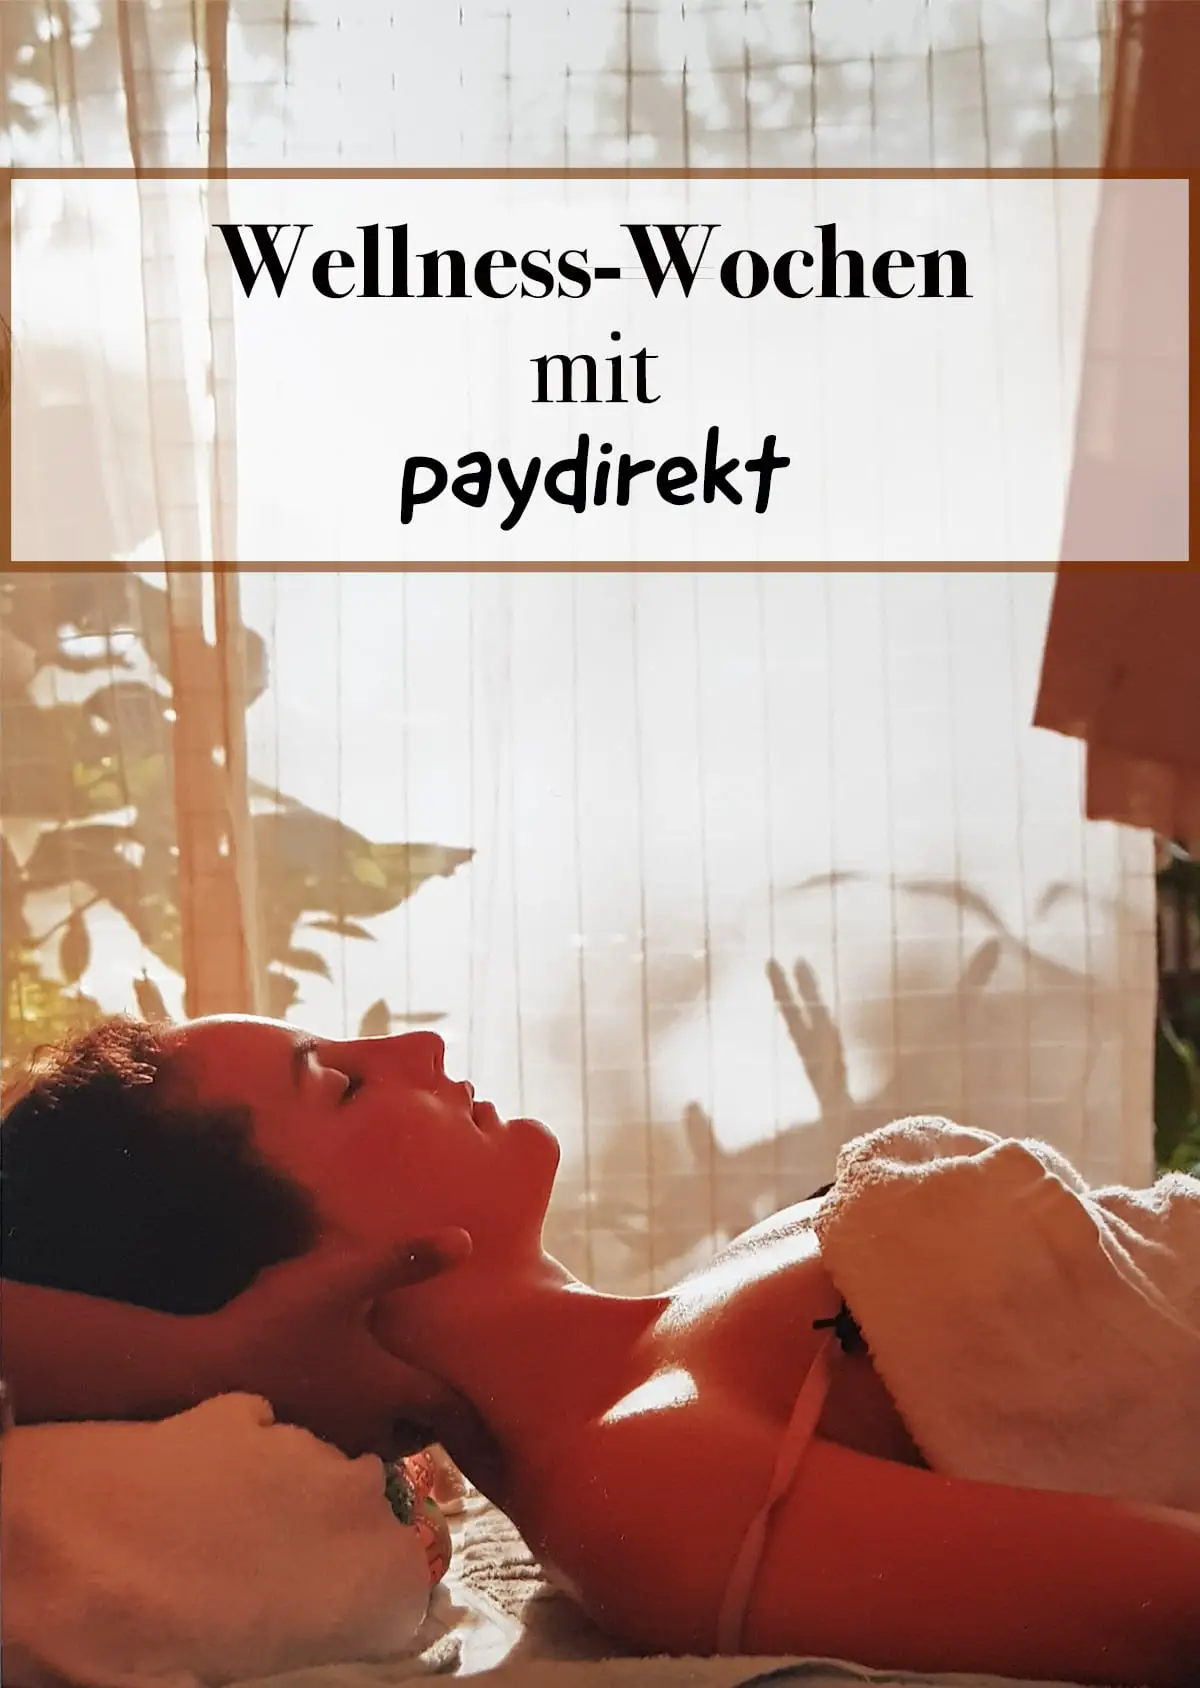 Gratis Spa Gutscheine mit Wellness Wochen von paydirekt